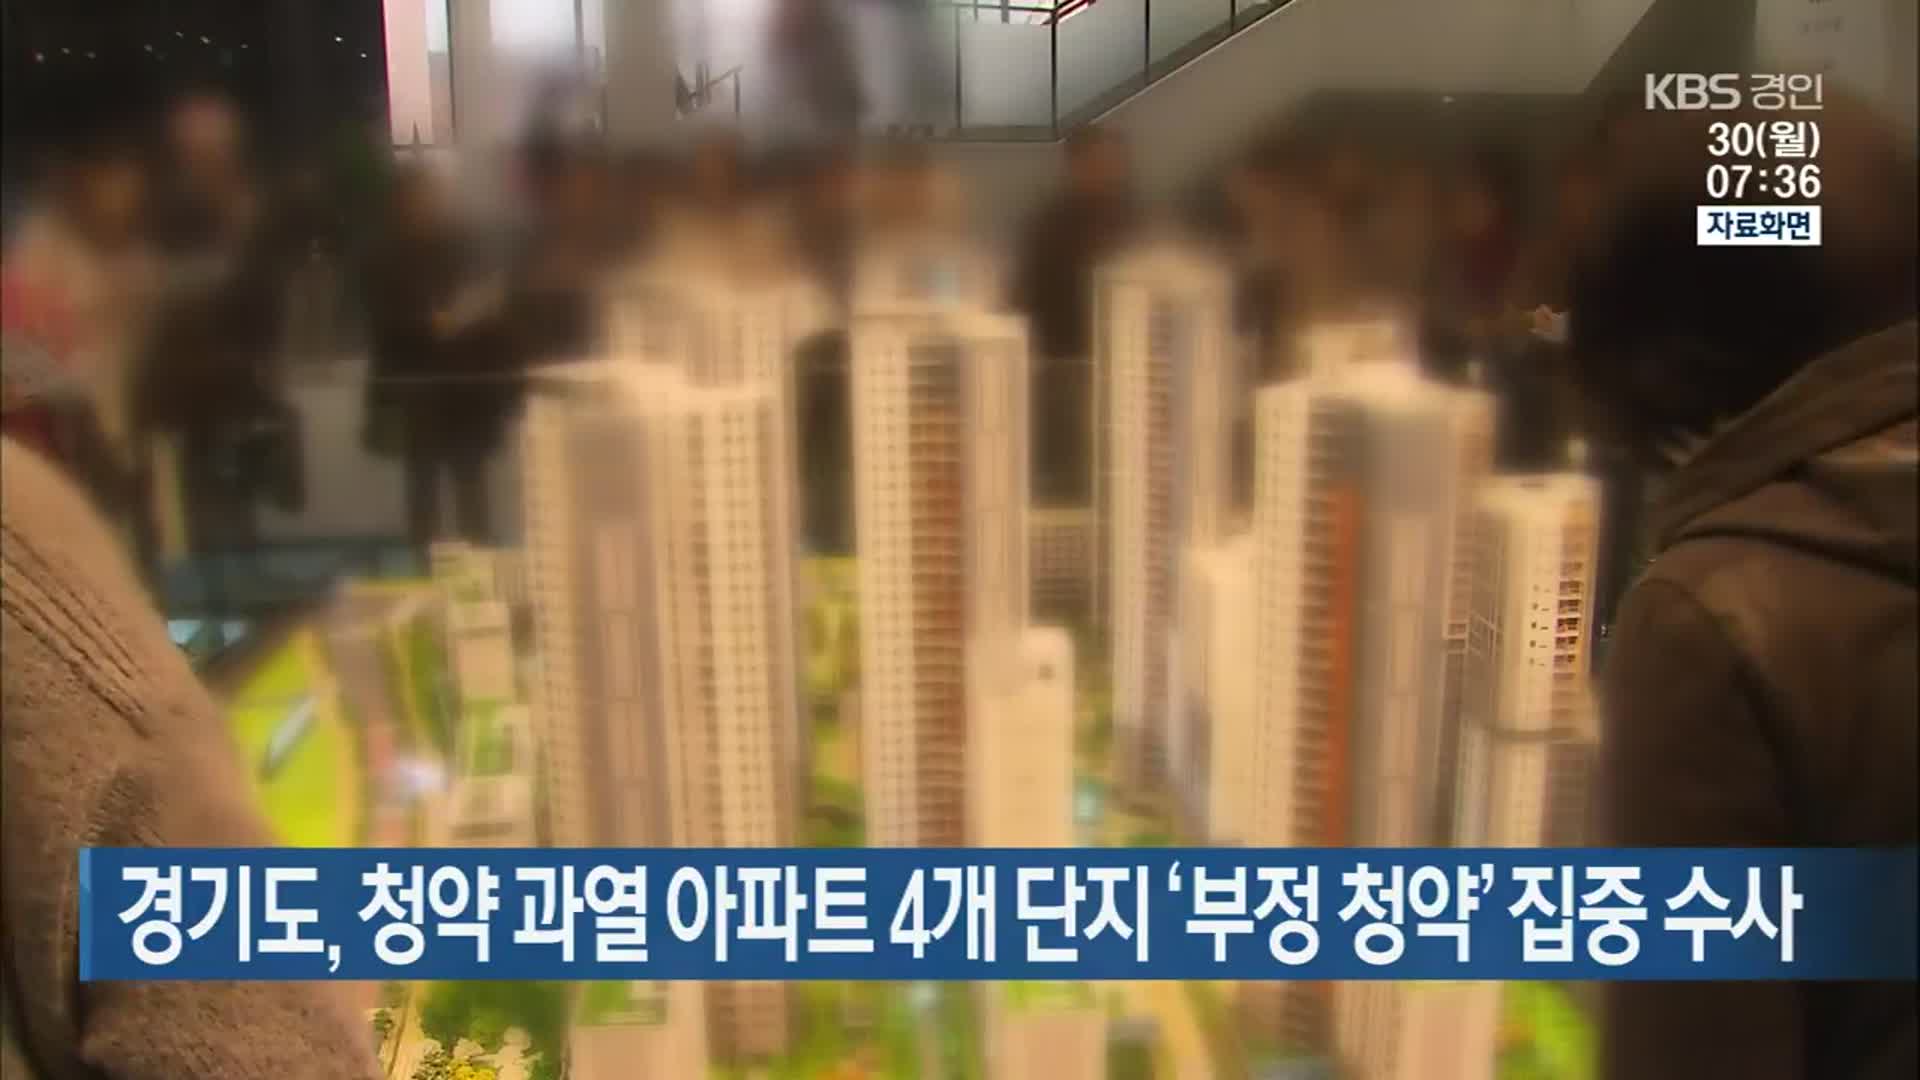 경기도, 청약 과열 아파트 4개 단지 ‘부정 청약’ 집중 수사